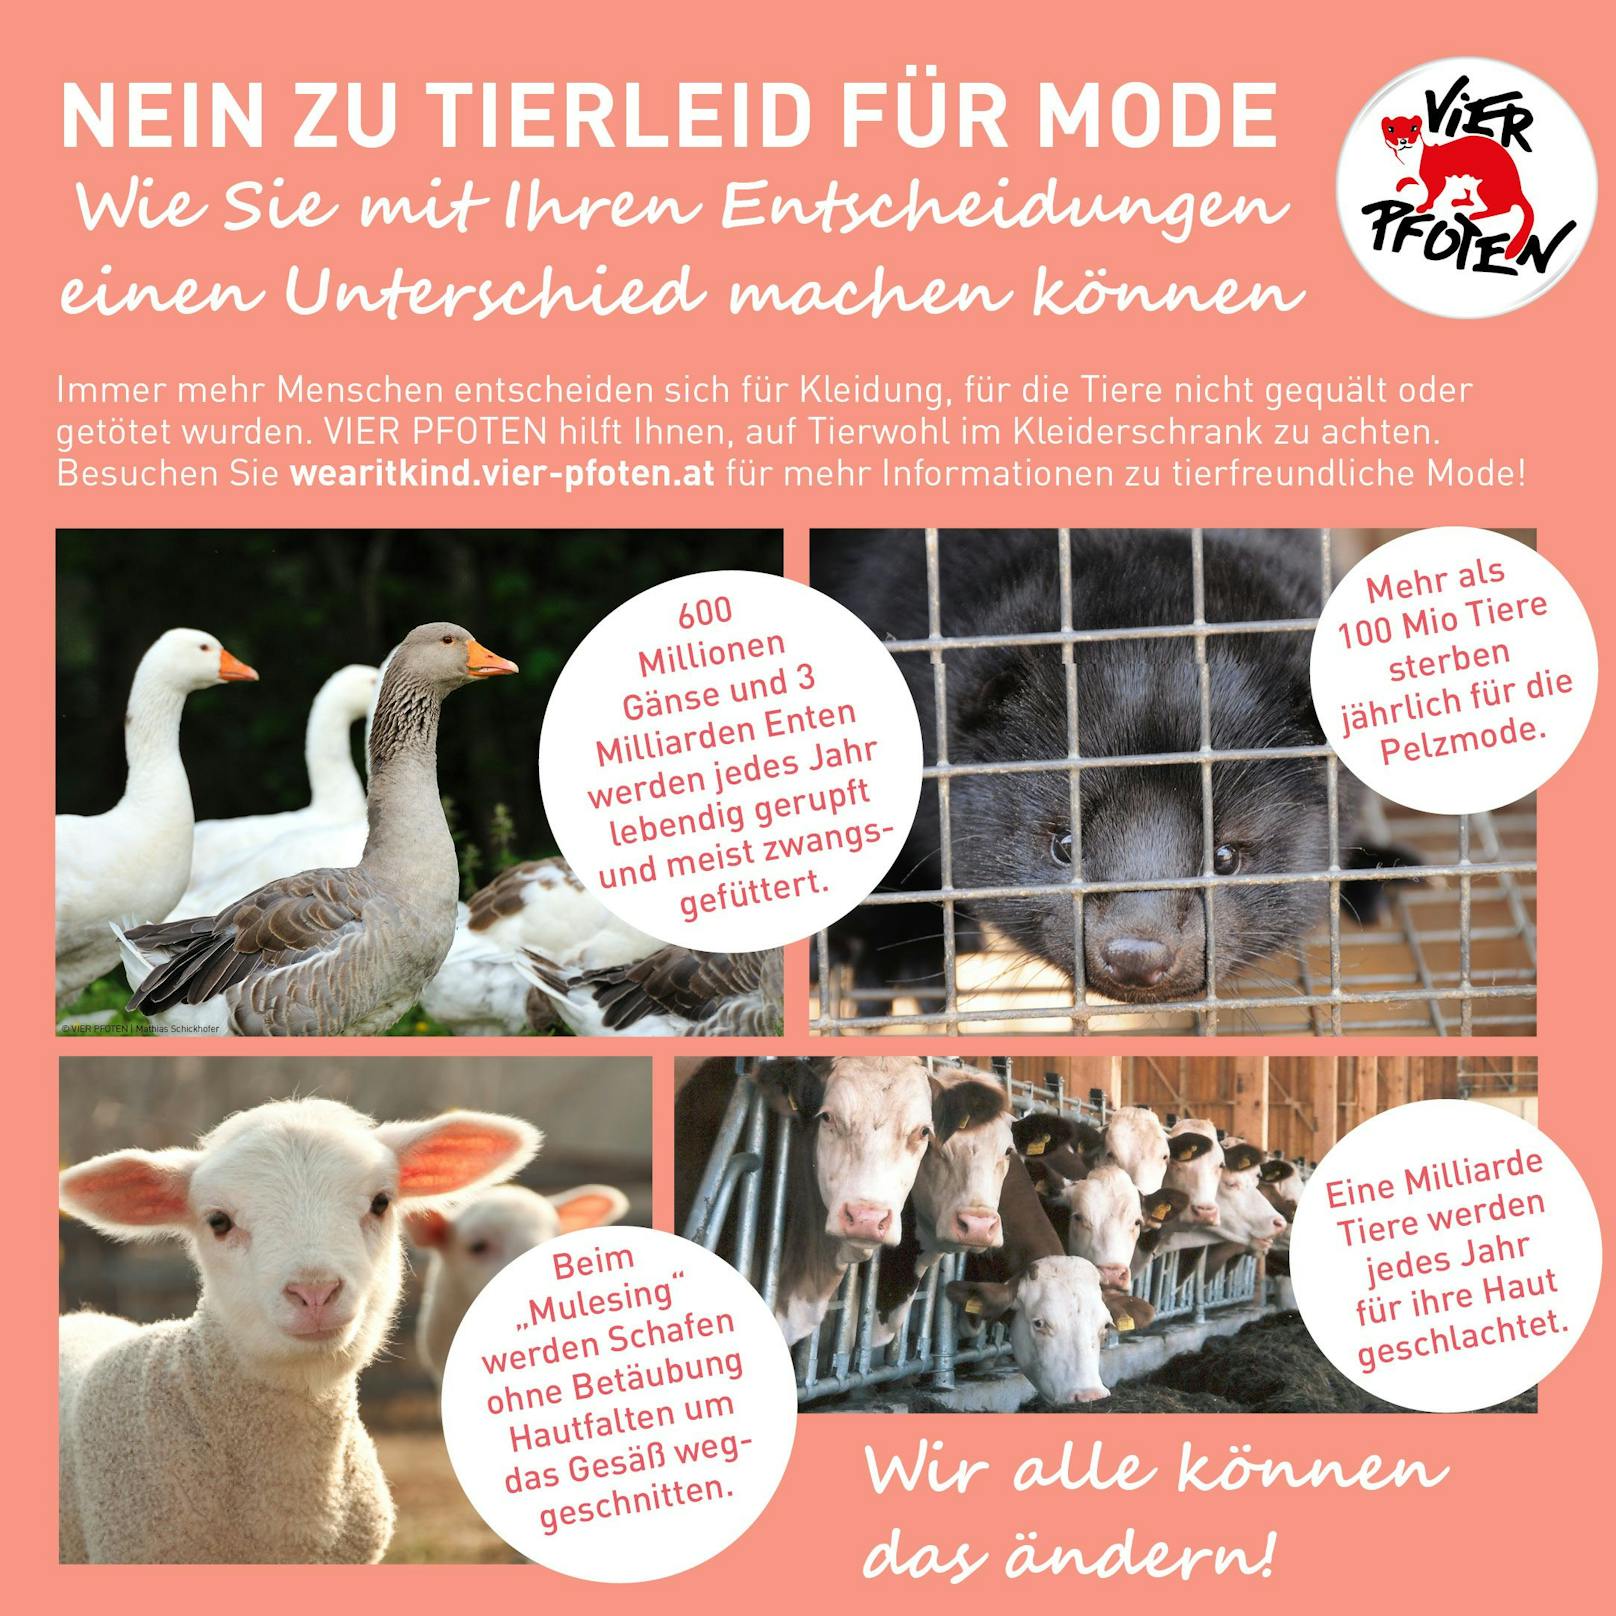 Das neue Vier Pfoten-Programm "Wear it Kind" fordert Konsumenten und Industrie auf, "Nein" zu Tierquälerei zu sagen. <a href="https://help.four-paws.org/en/take-pledge-wear-it-kind">Hier</a> geht's zur Petition "Wear it Kind".<br>